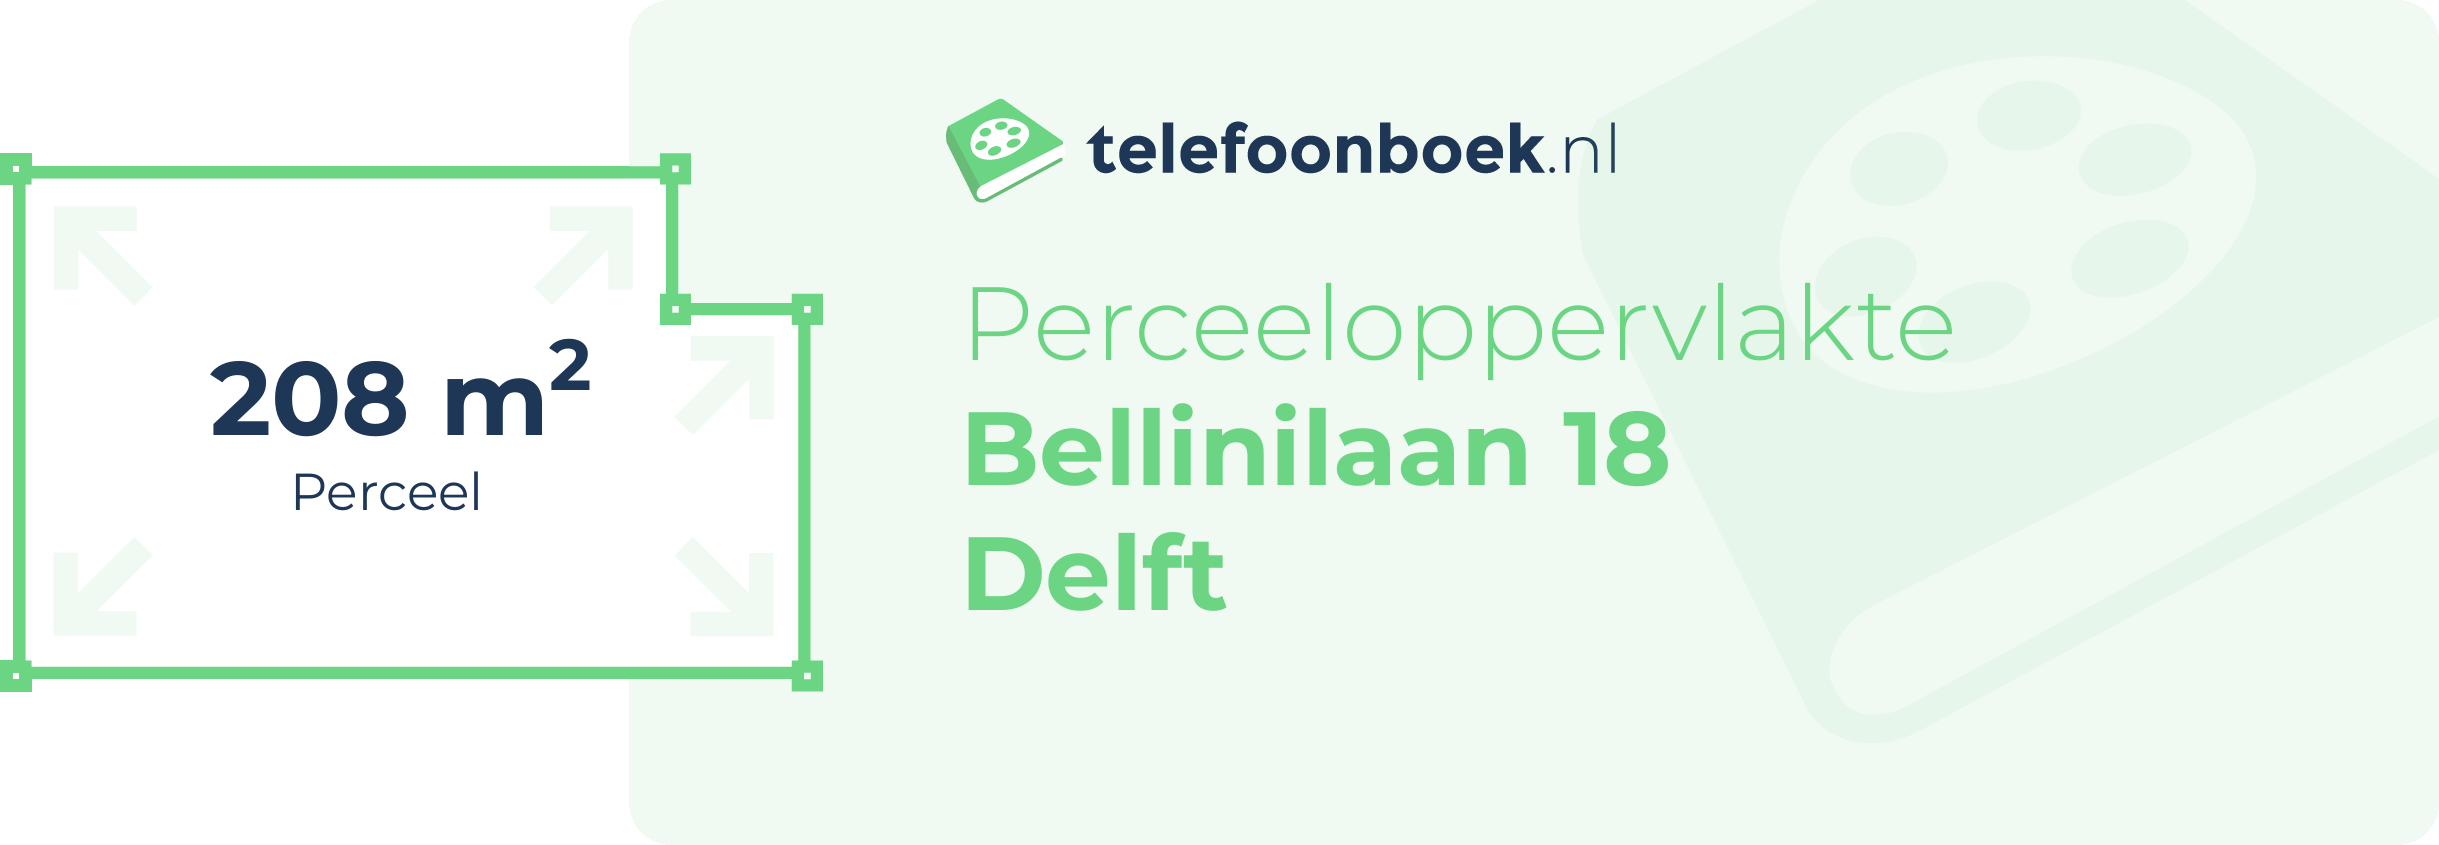 Perceeloppervlakte Bellinilaan 18 Delft